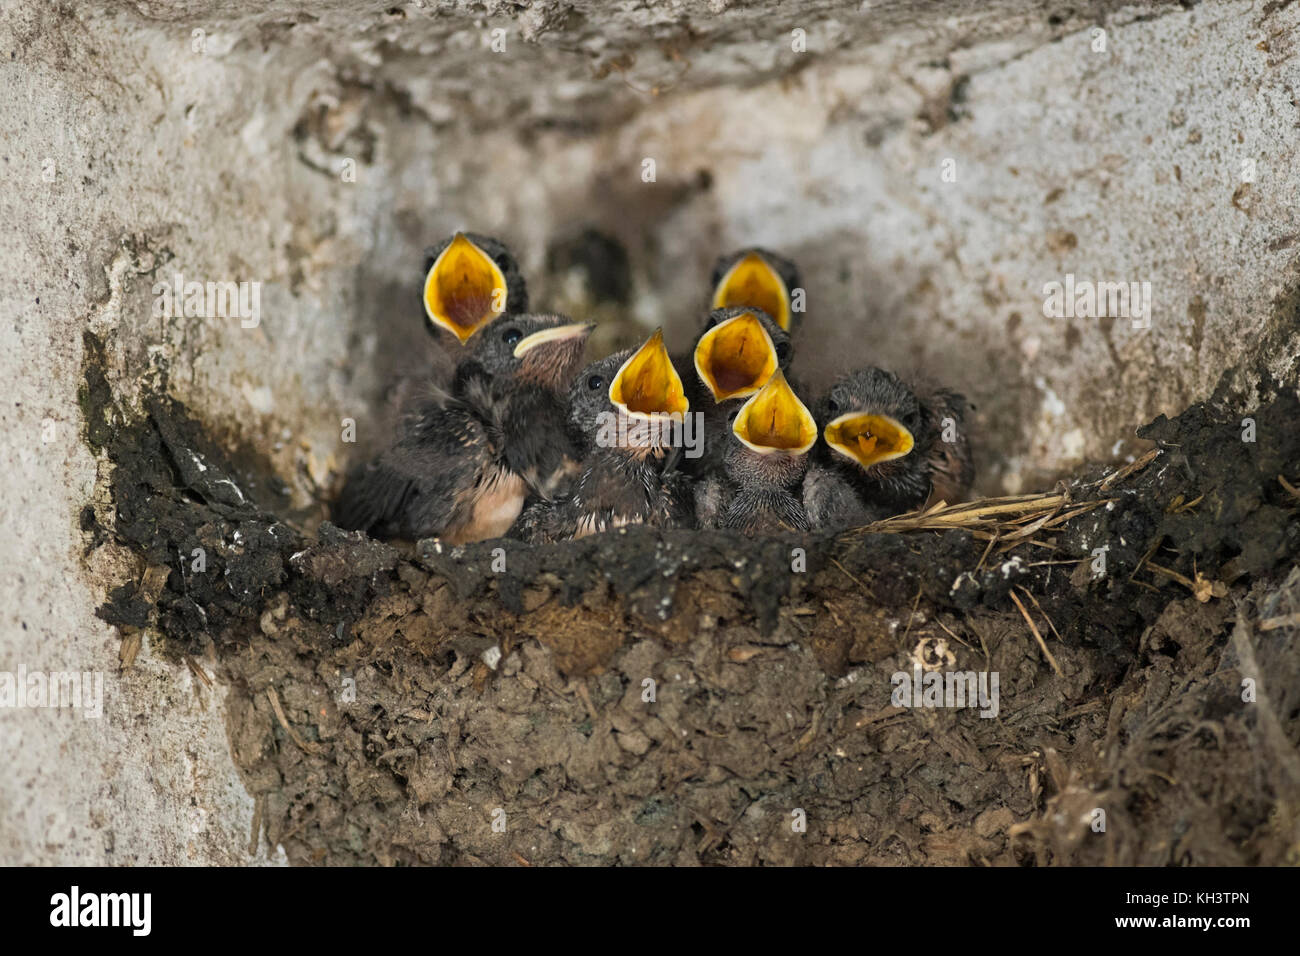 Rauchschwalben/Rauchschwalben (Hirundo rustica), sieben jungen Küken in einem Nest, Betteln, weit geöffneten gelben Schnäbeln, sieht lustig, wildilfe, E Stockfoto